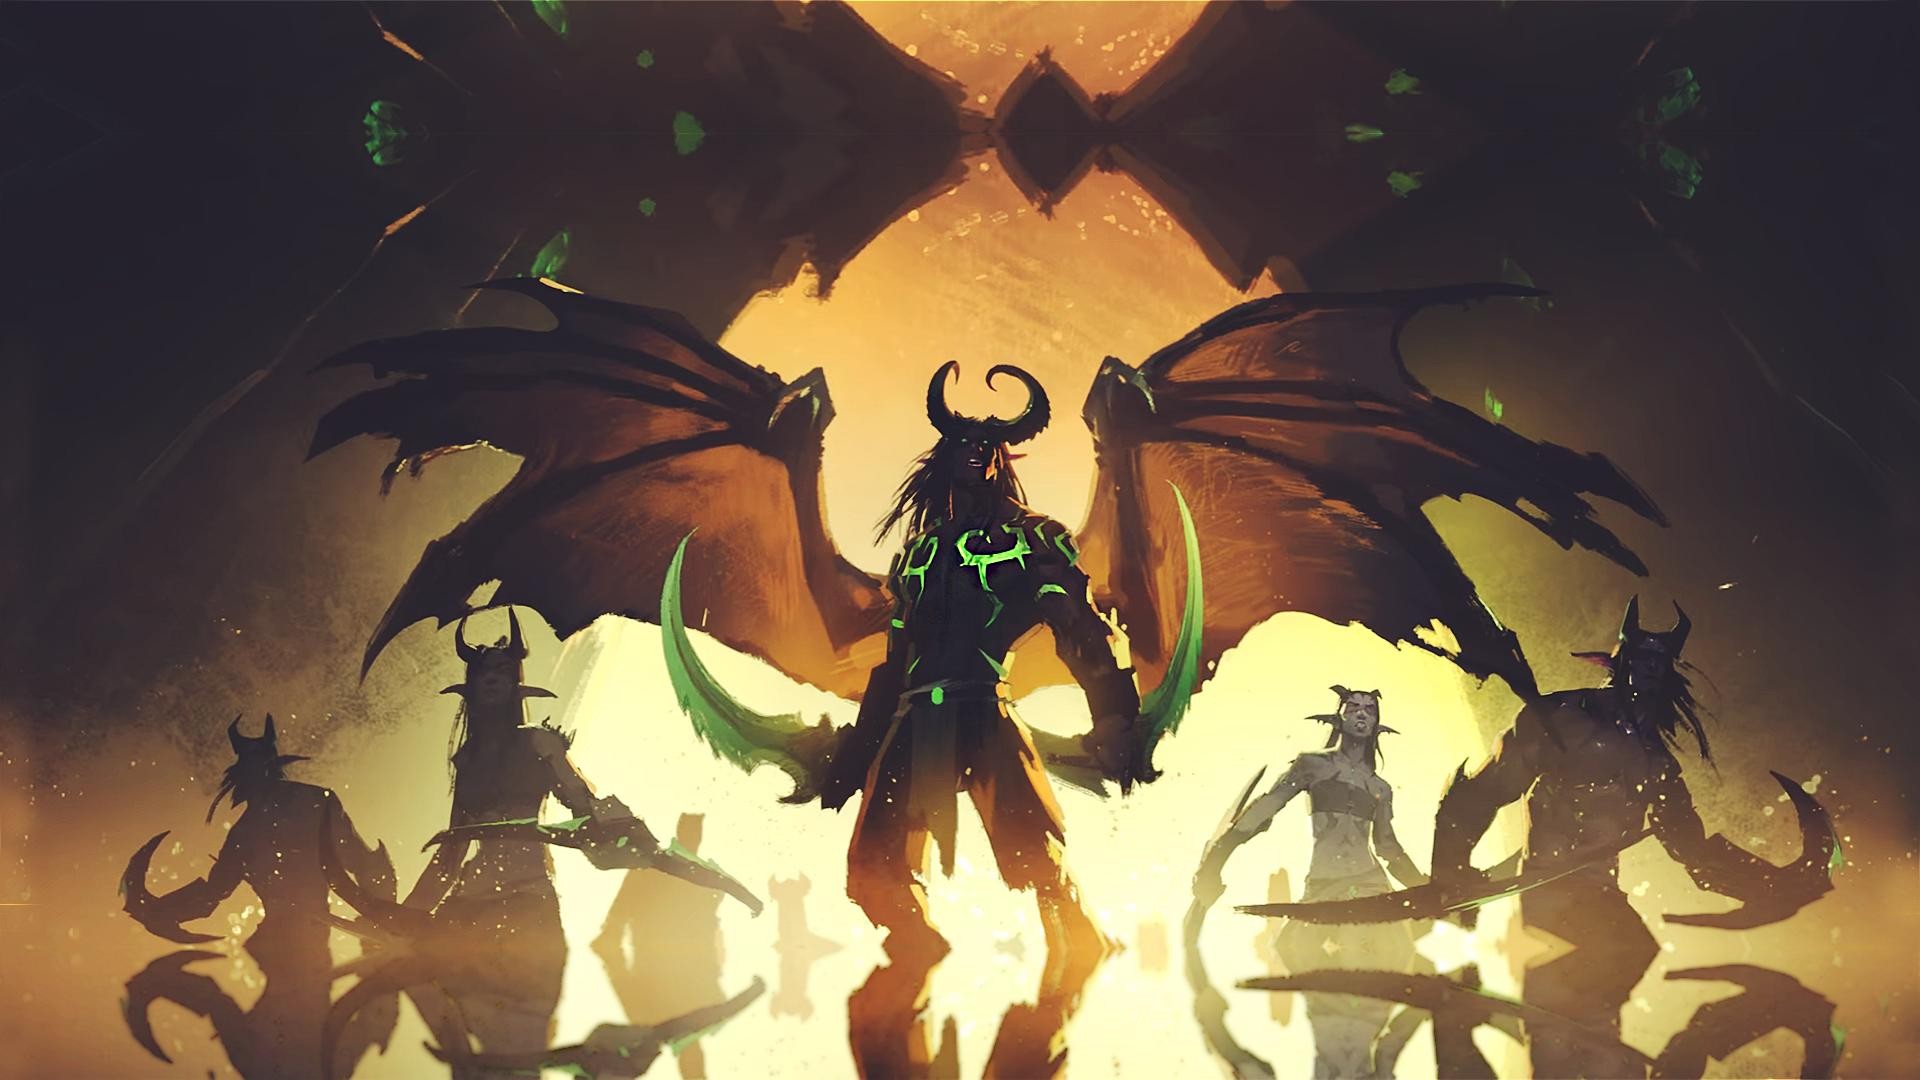 General 1920x1080 World of Warcraft video game art video games Illidan Stomrage (Warcraft) Demon Hunter PC gaming fantasy art